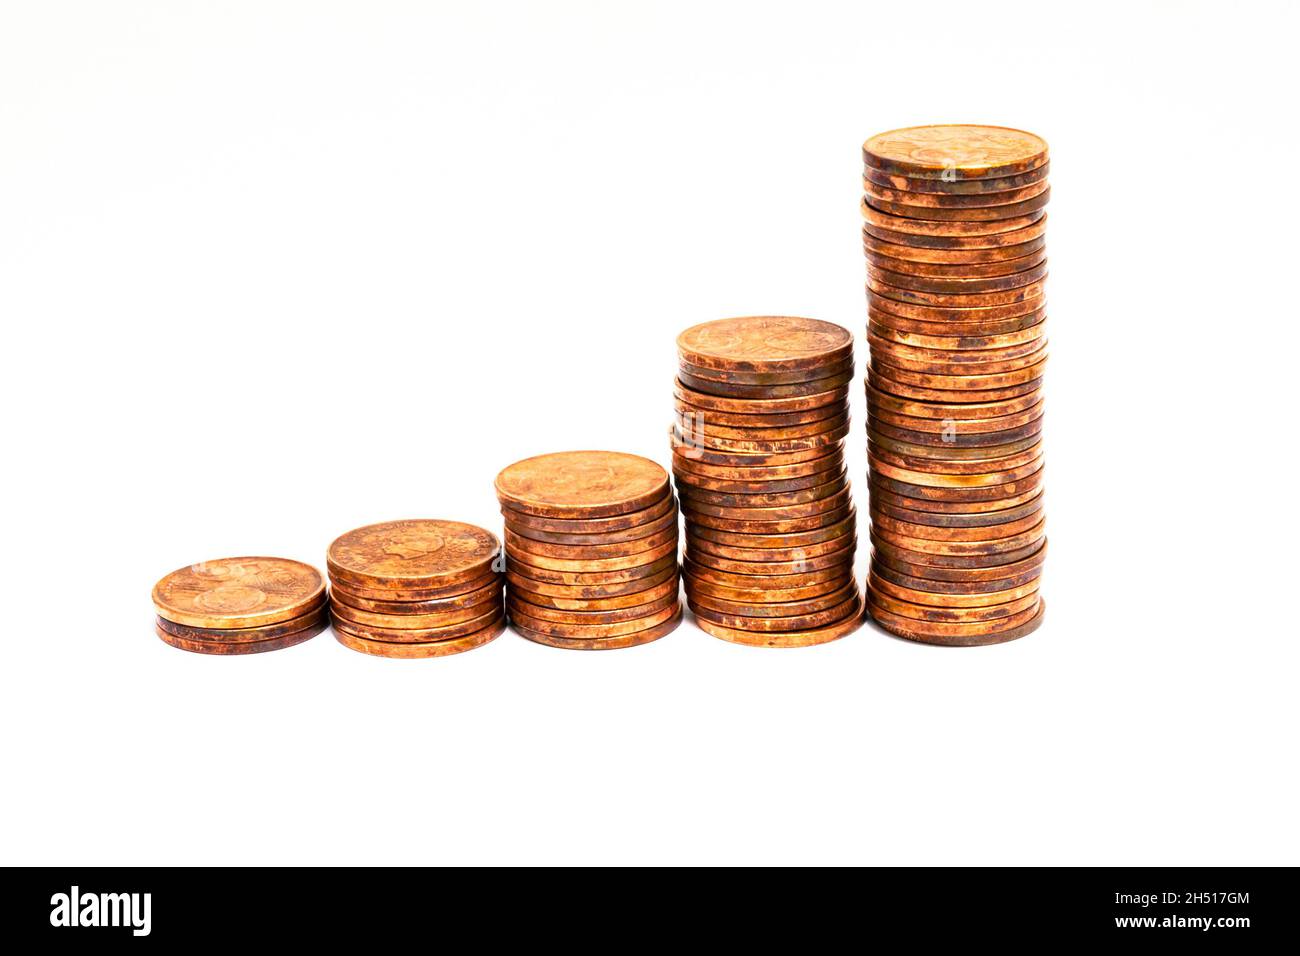 Stapel von 5-Euro-Cent-Münzen, die allmählich an Höhe zunehmen. Symbolisch für Wirtschaftswachstum oder Inflation. Stockfoto